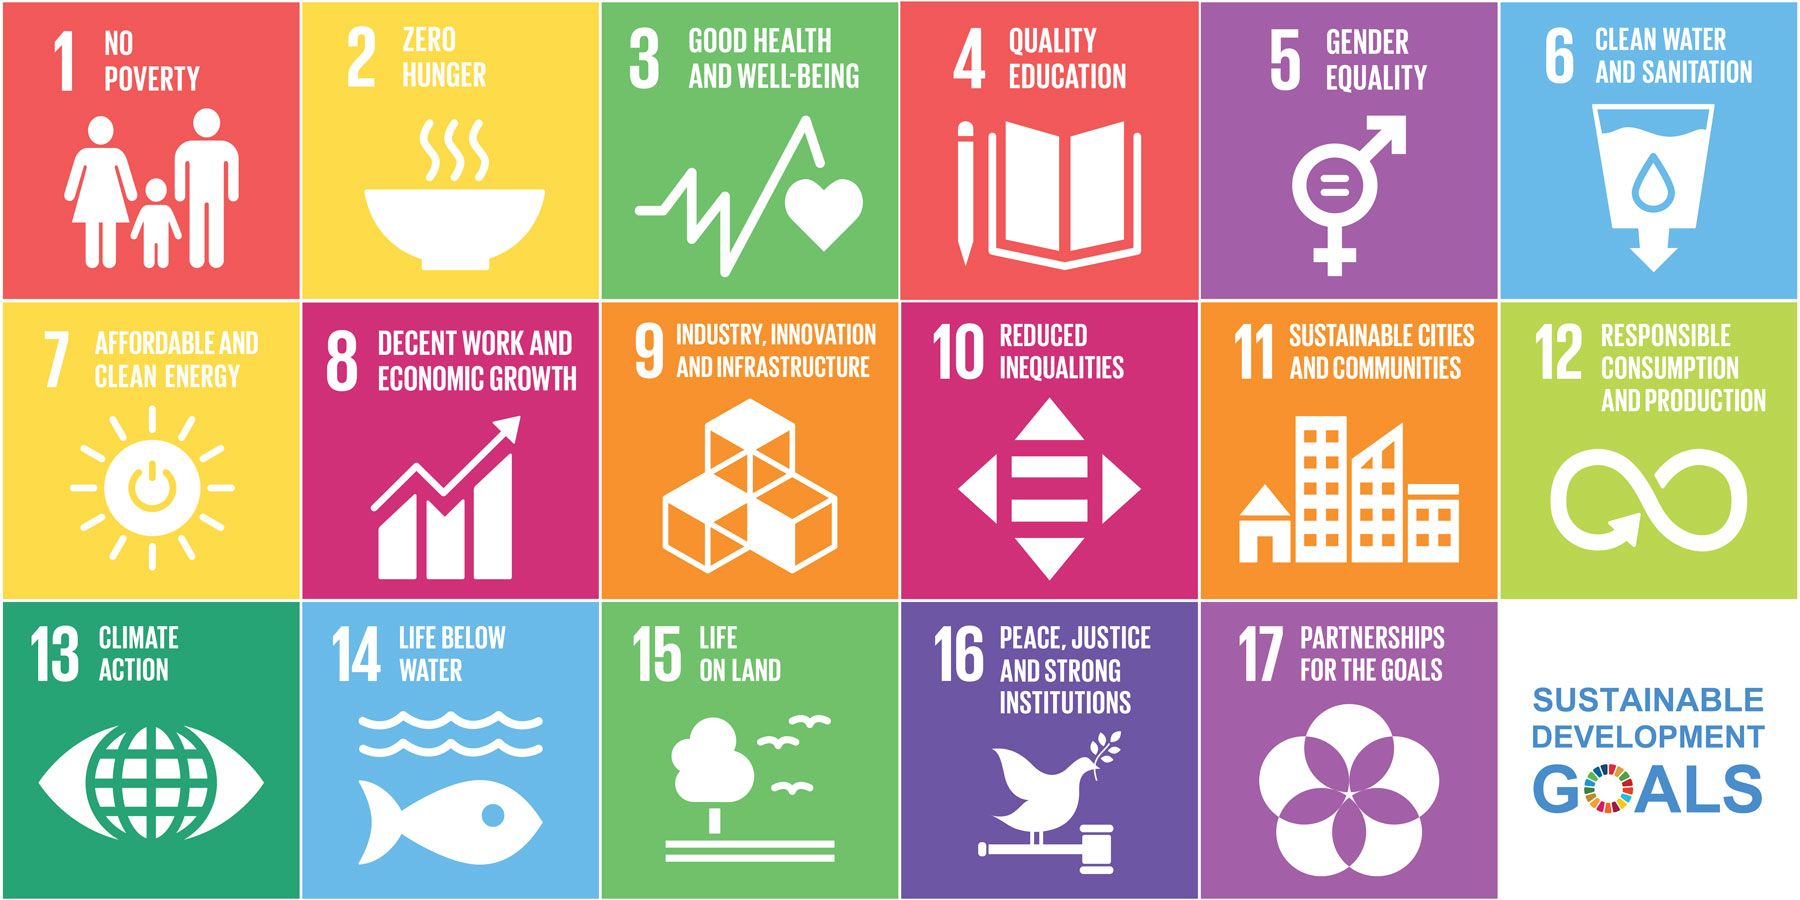 UN-Agenda 2030 for a sustainable future